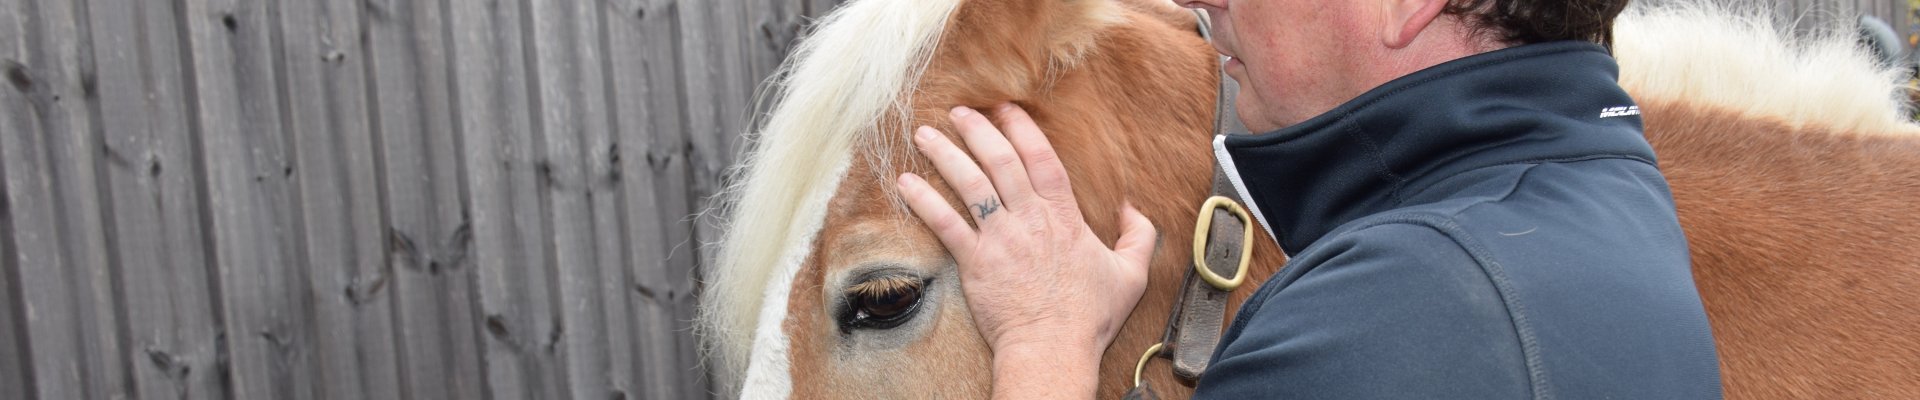 Ontdek de voordelen van cranio-sacraal therapie bij paarden